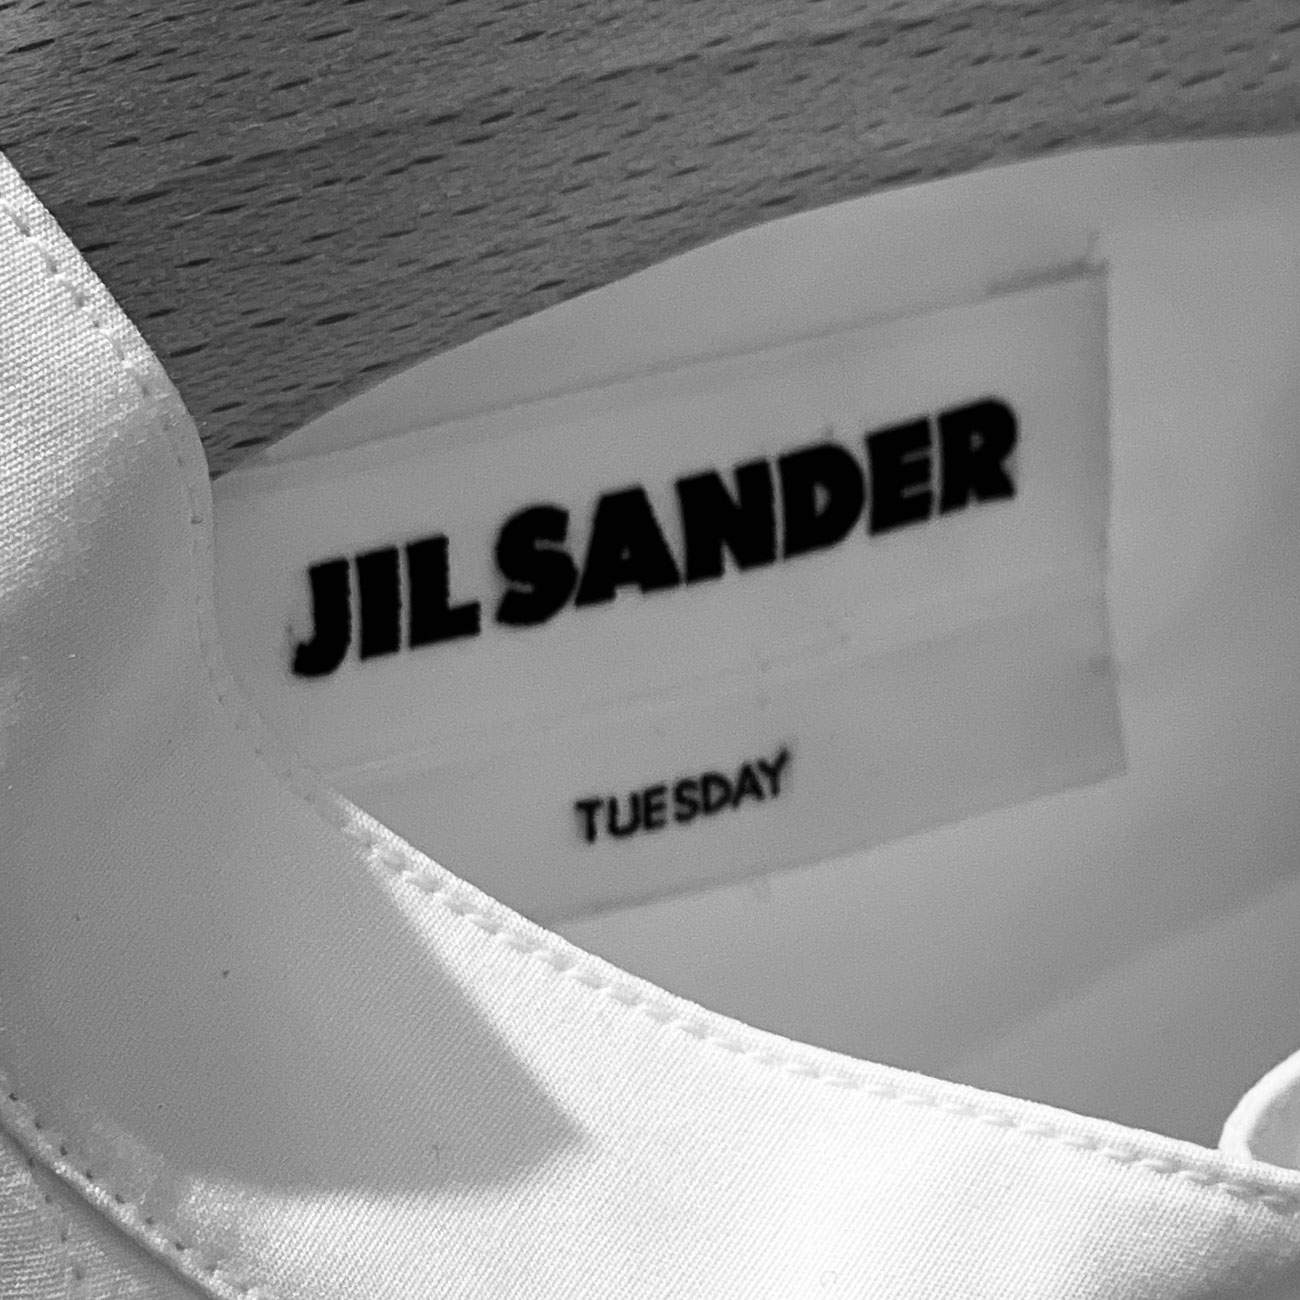 ジルサンダー”毎日着られる7枚のシャツ”シリーズから黒バージョンの 